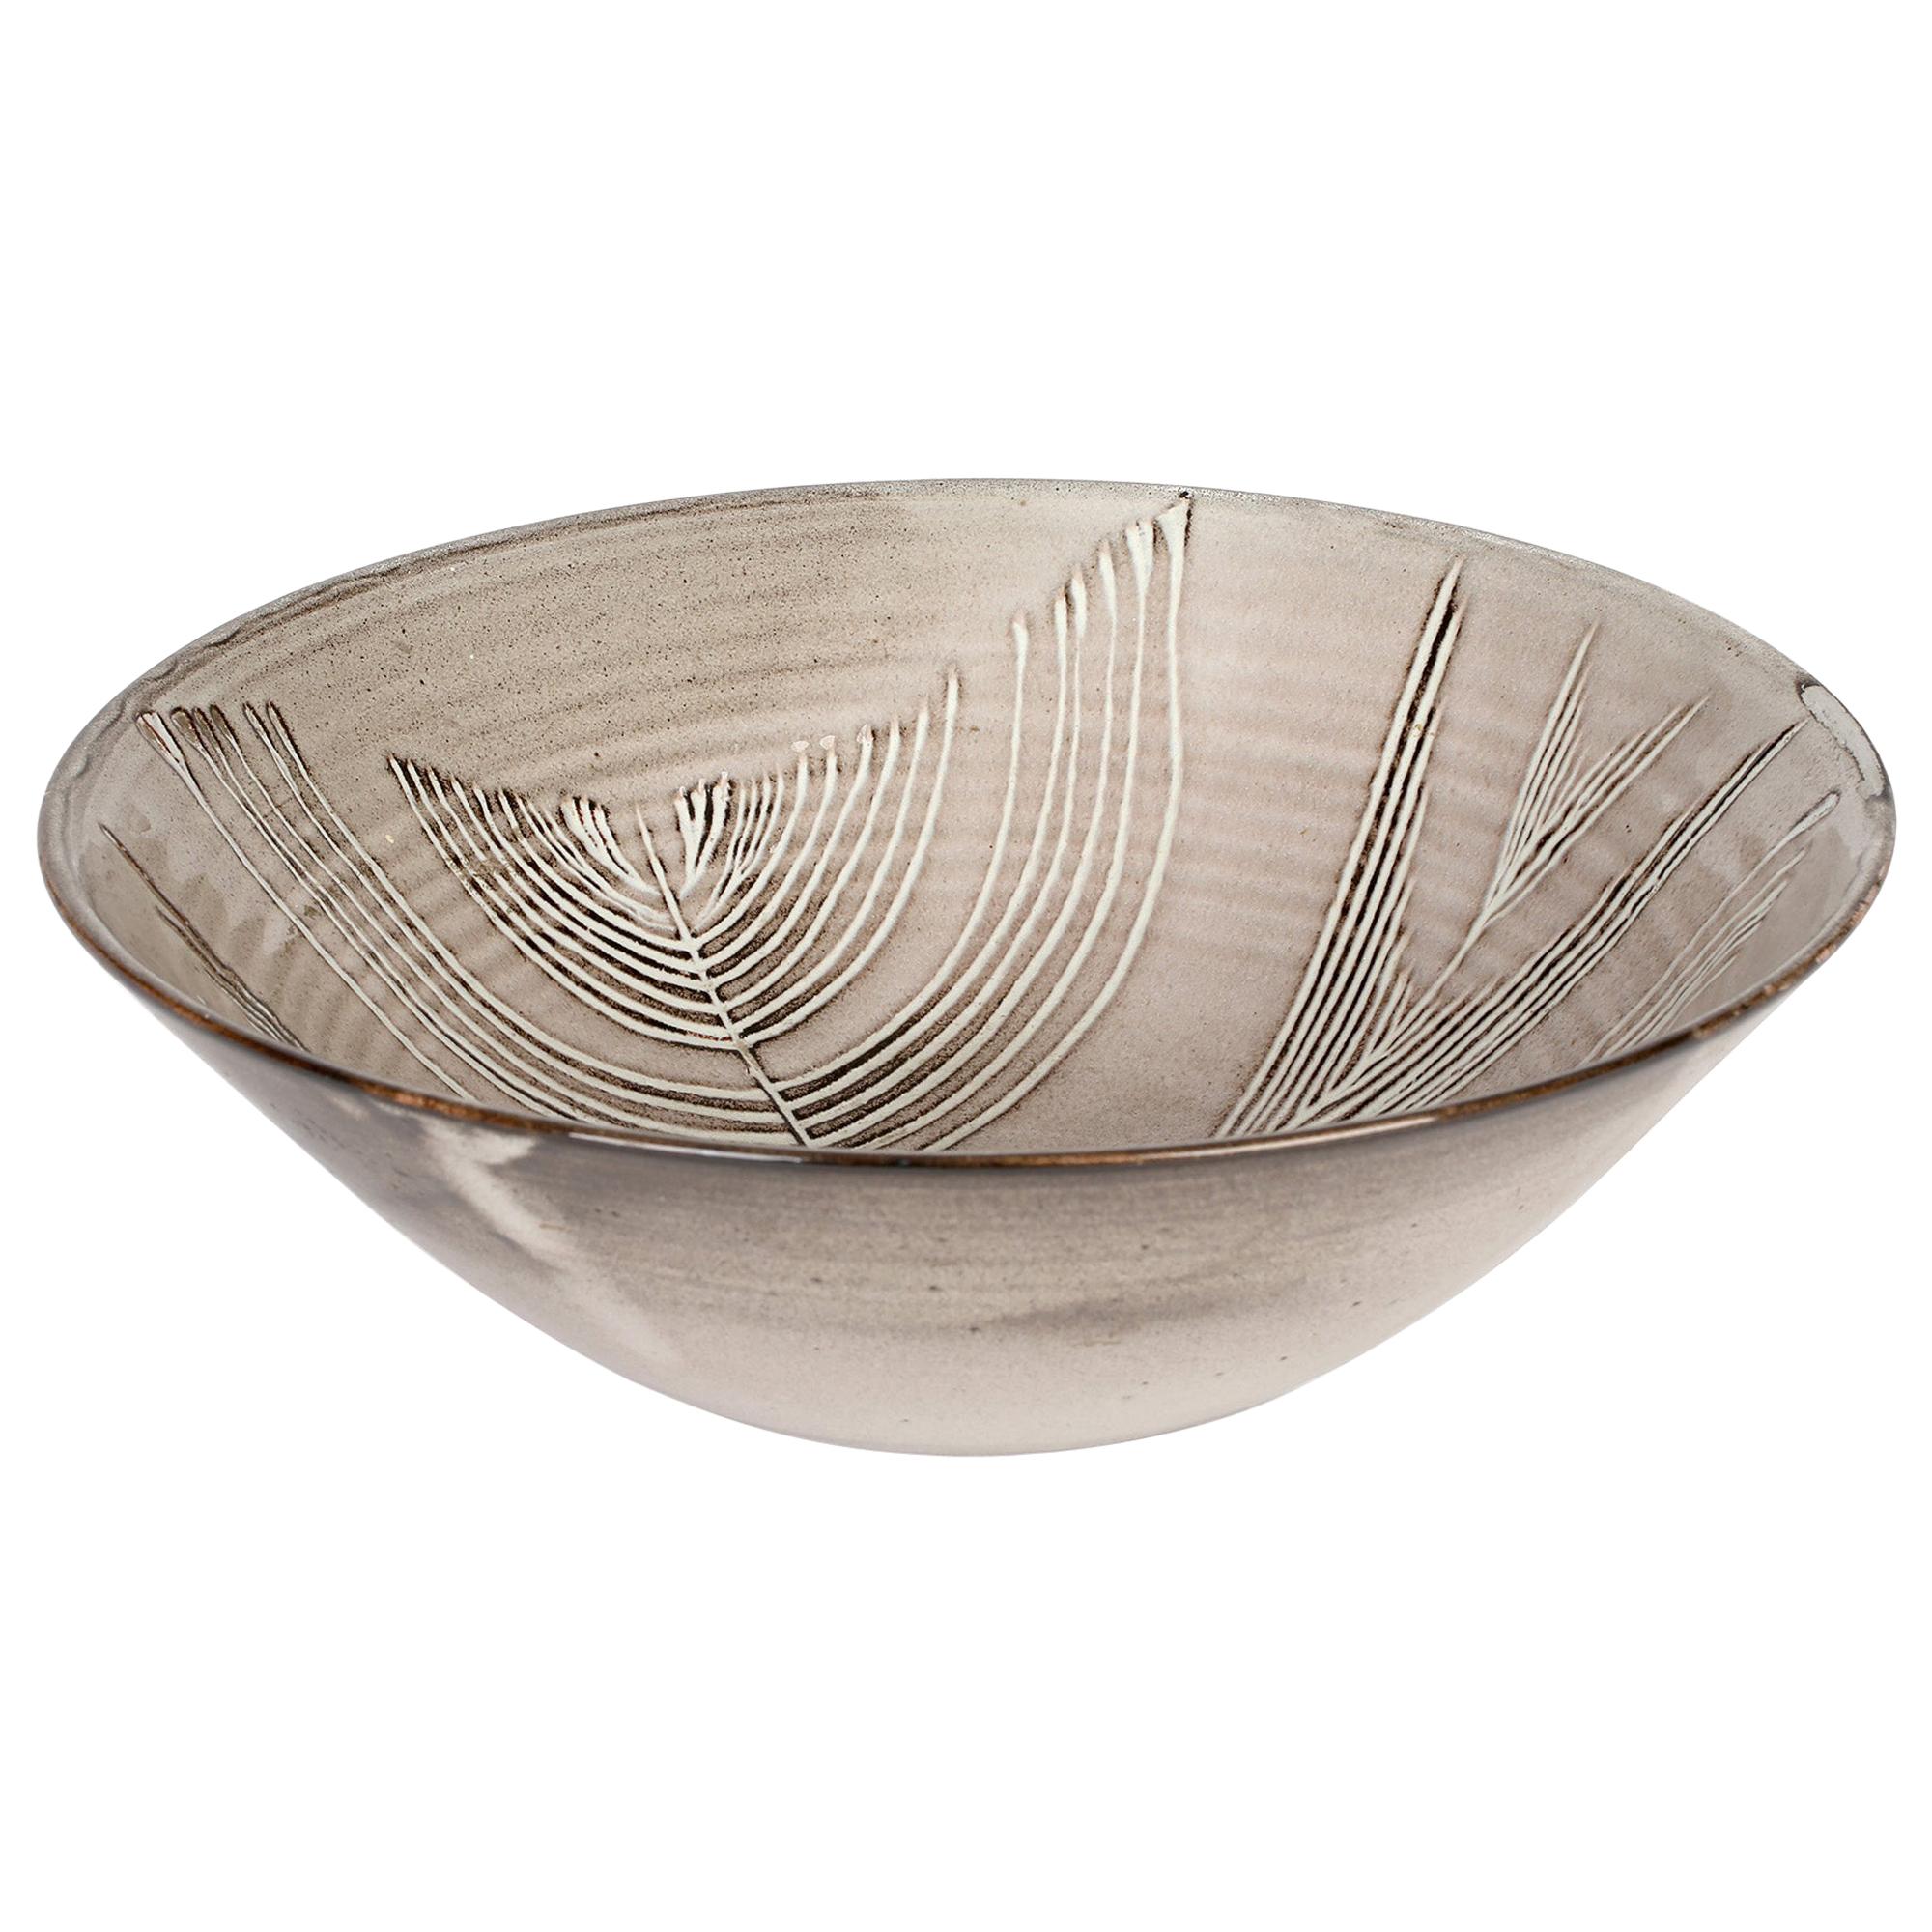 David Leach Feather Design Grey Glazed Studio Pottery Bowl